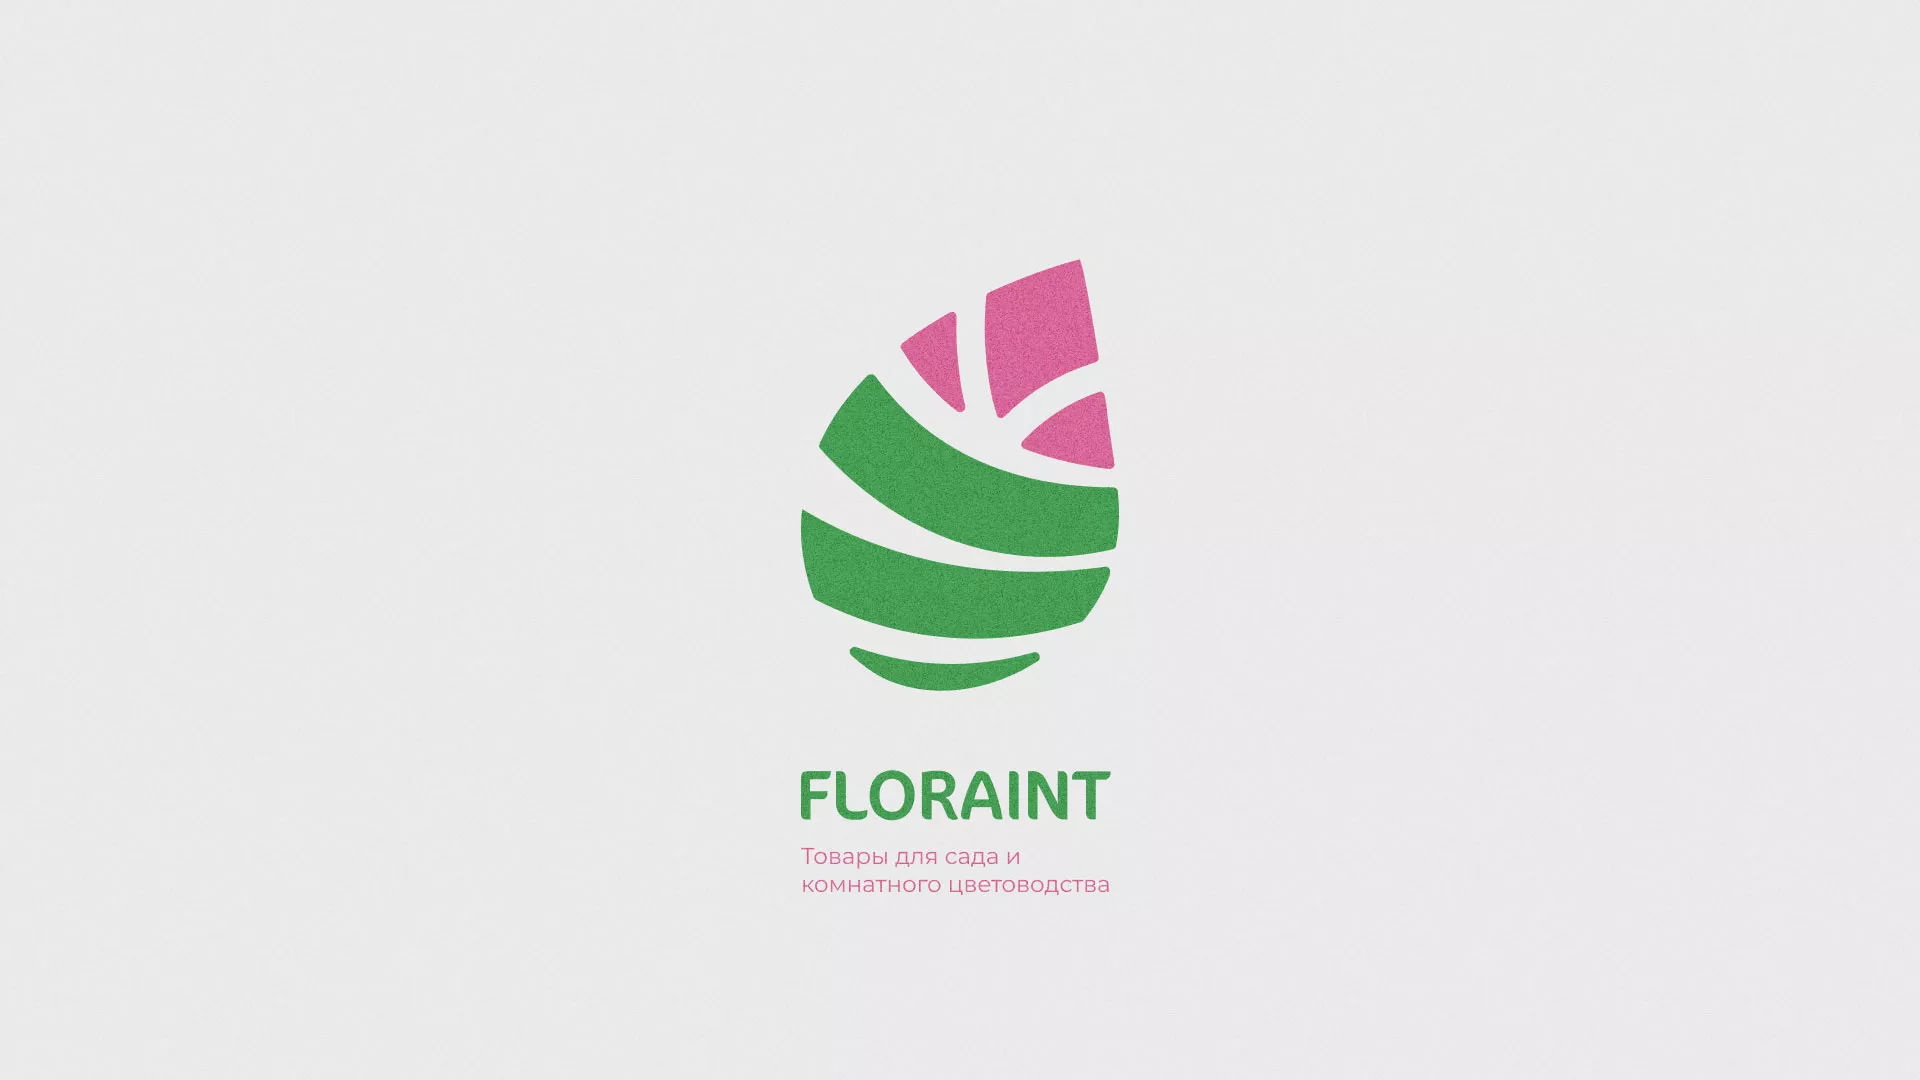 Разработка оформления профиля Instagram для магазина «Floraint» в Бирюче